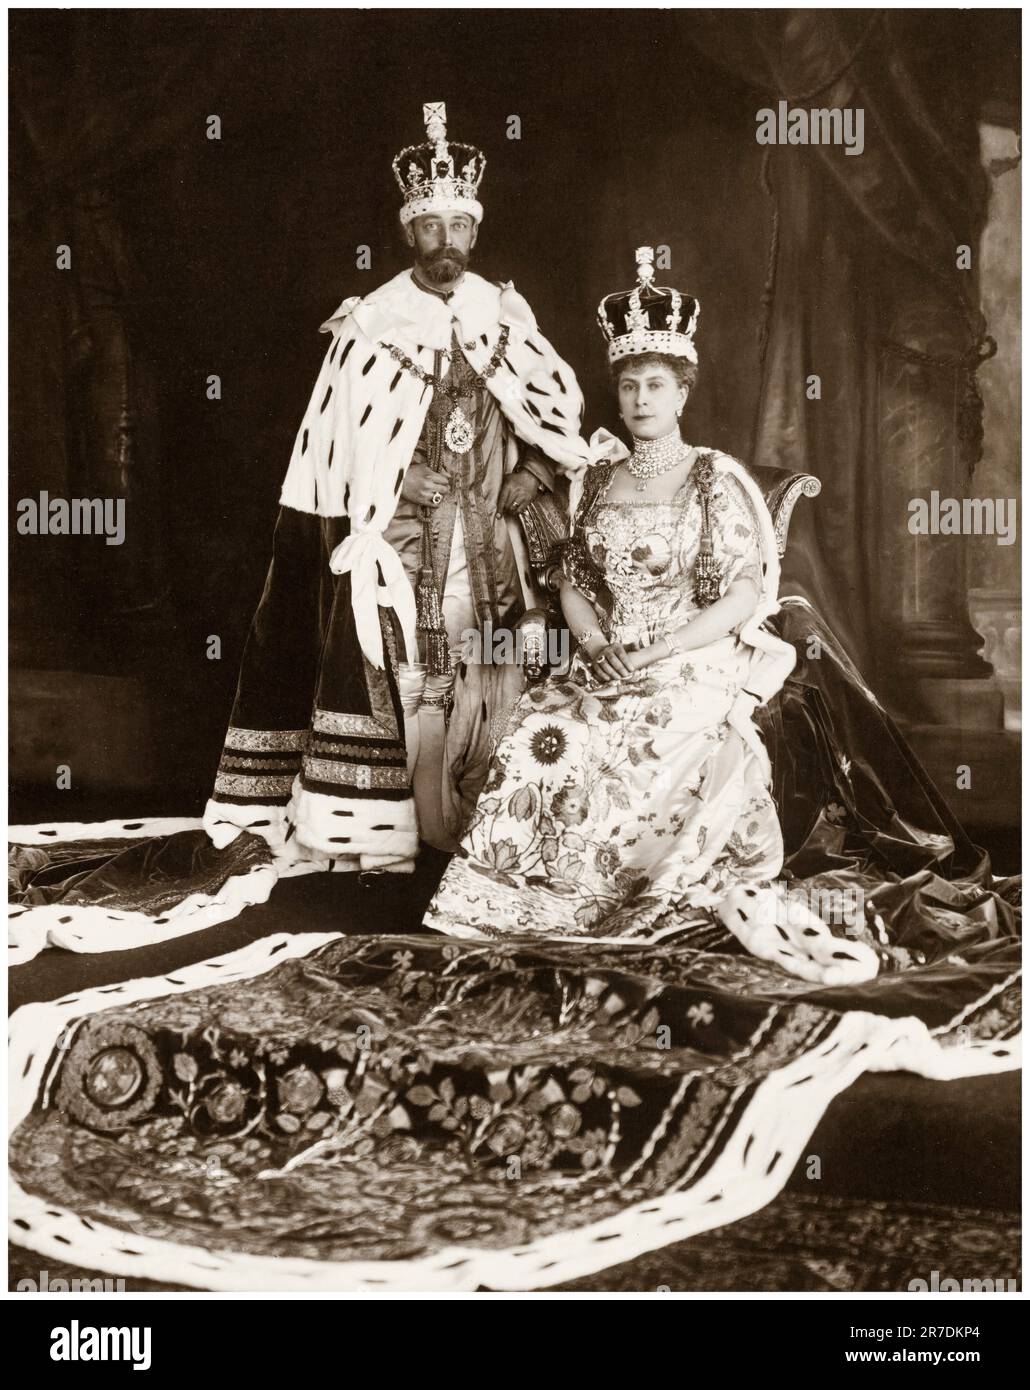 Ritratto di incoronazione di Re Giorgio V e Regina Maria del Regno Unito, incoronato il 22nd giugno 1911, ritratto di William Downey, 1911 Foto Stock